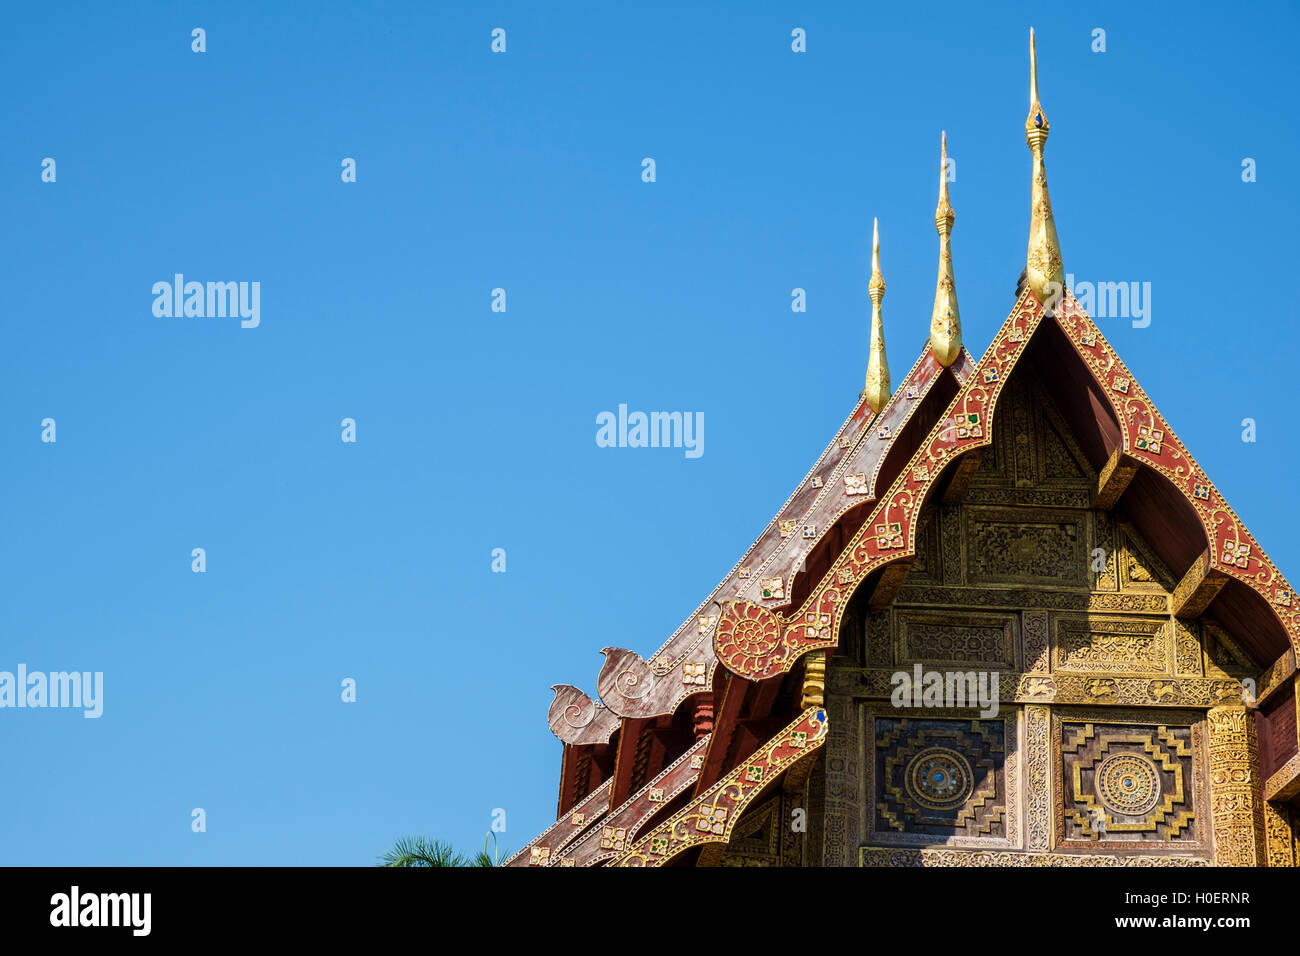 De style Lanna toit à trois niveaux avec chofa et bois sculpté fronton de Wat Phra Sing, Chiang Mai, la province de Chiang Mai, Thaïlande. Banque D'Images